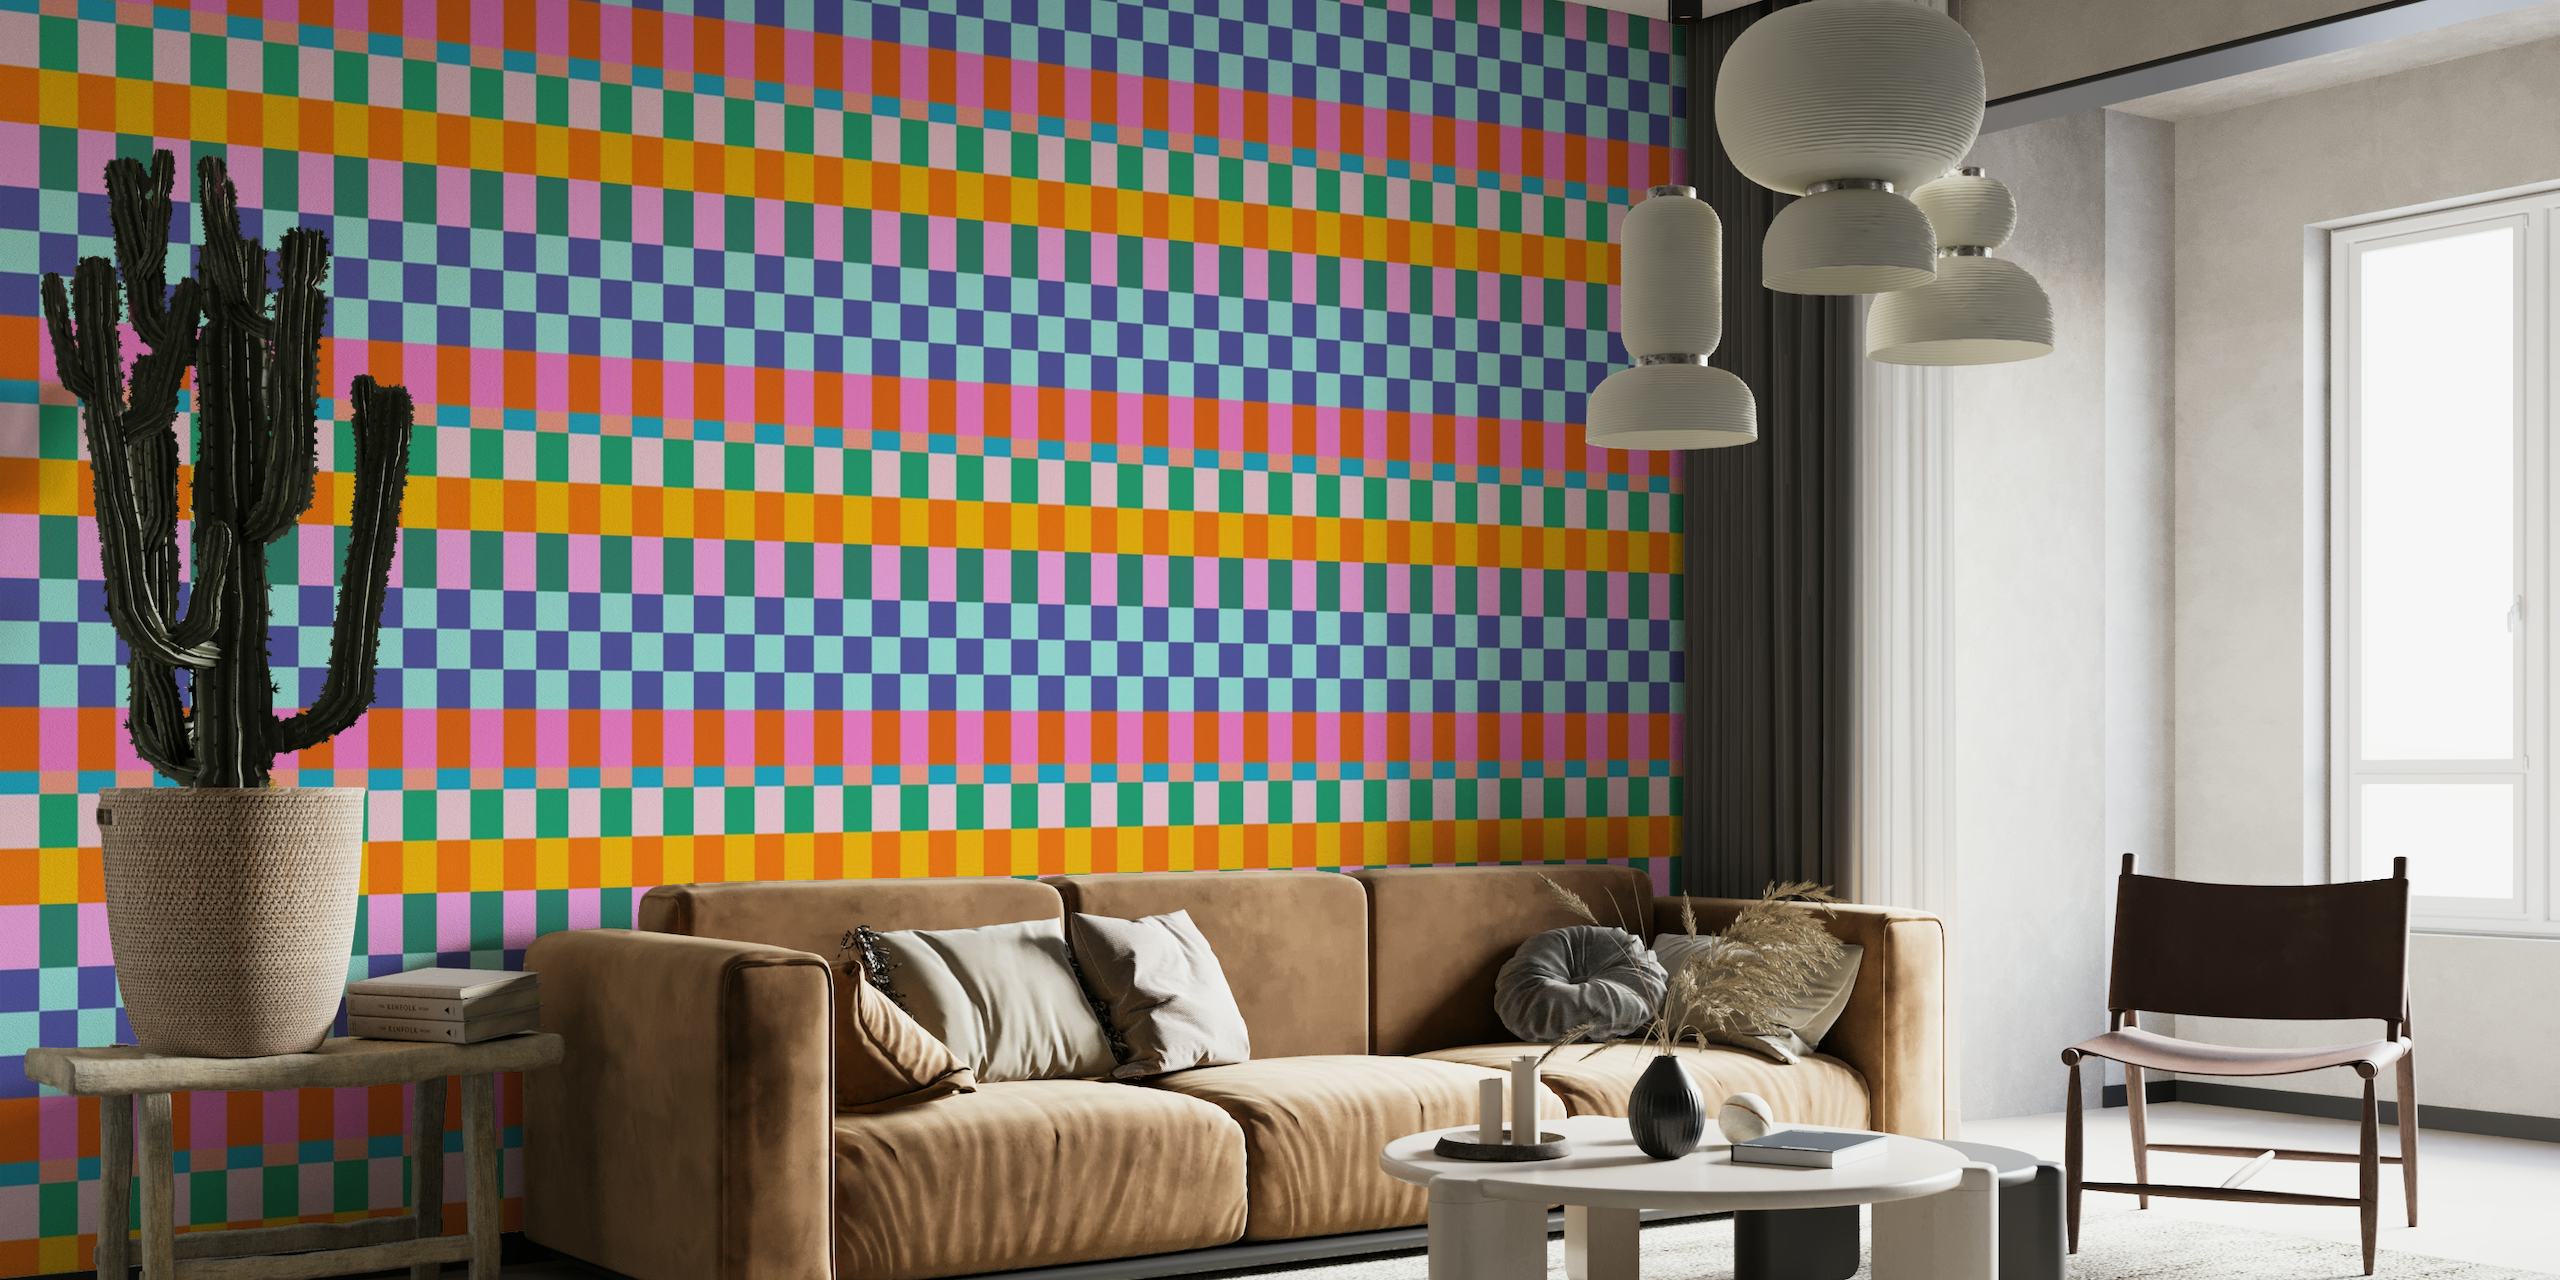 Striped Checkerboard wallpaper